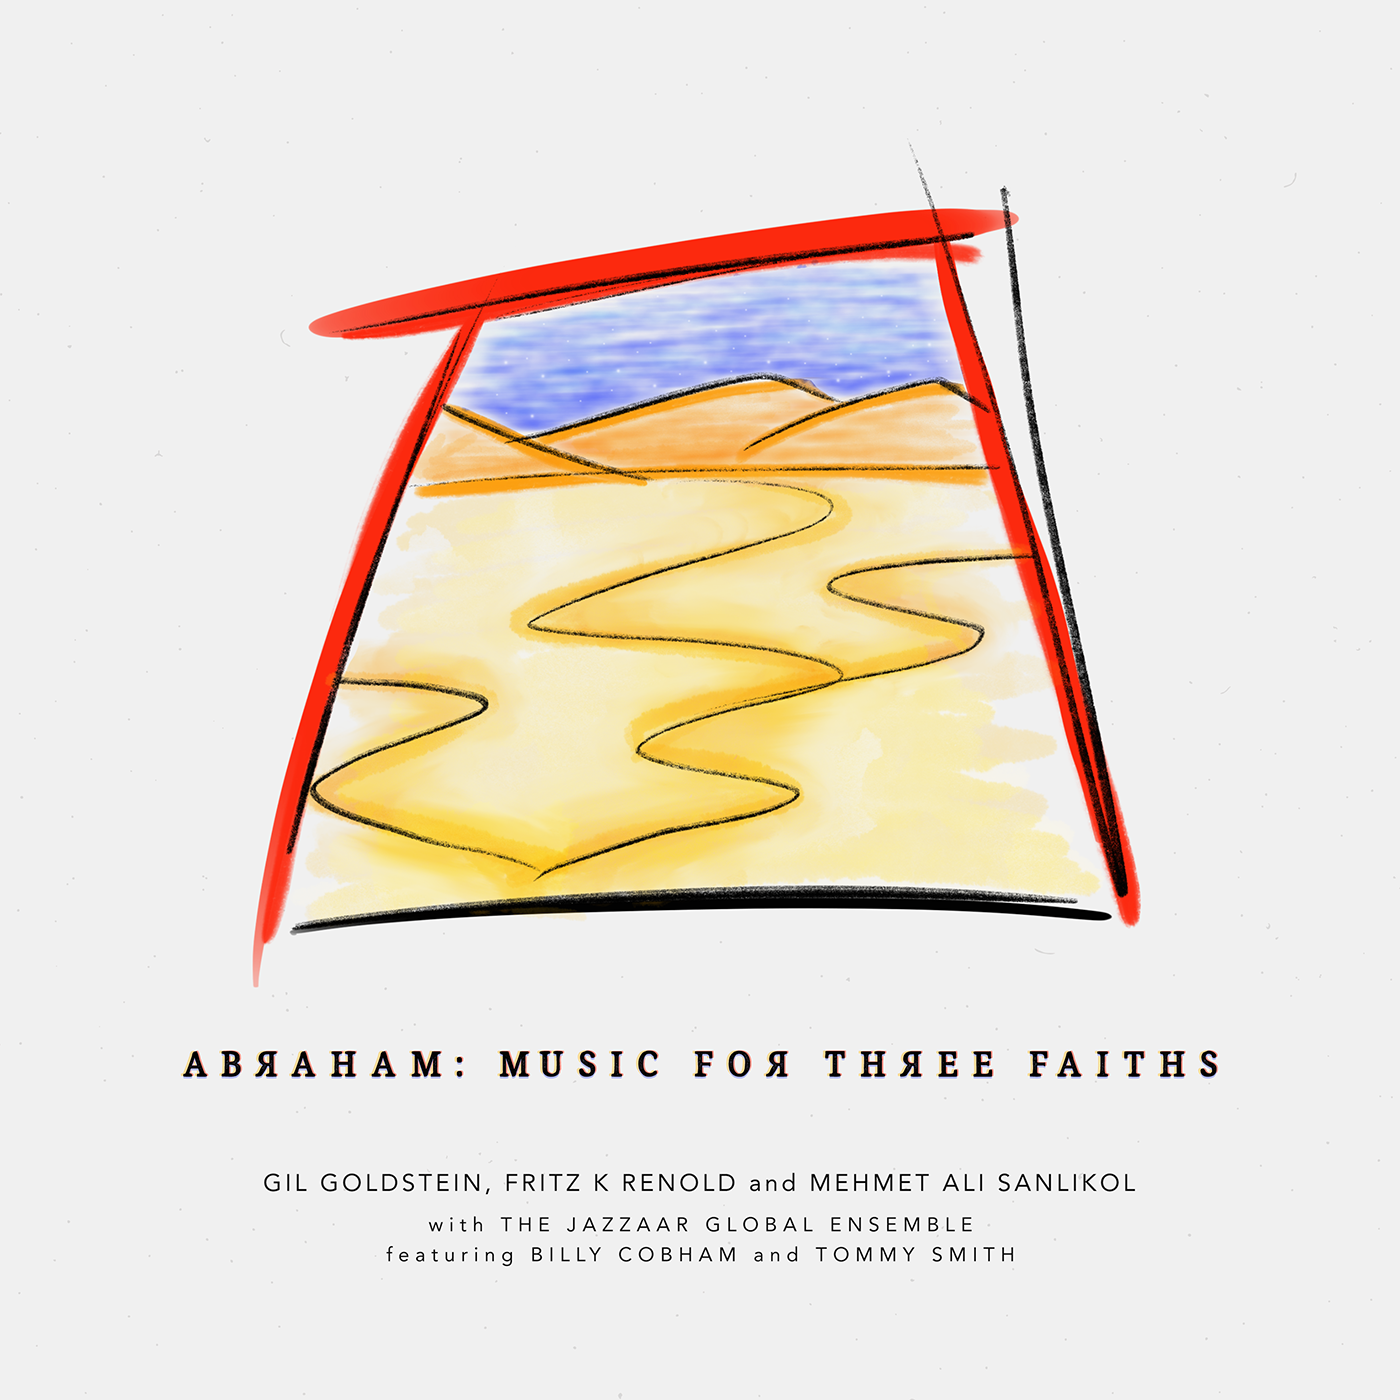 2019 – Abraham: Music for Three Faiths